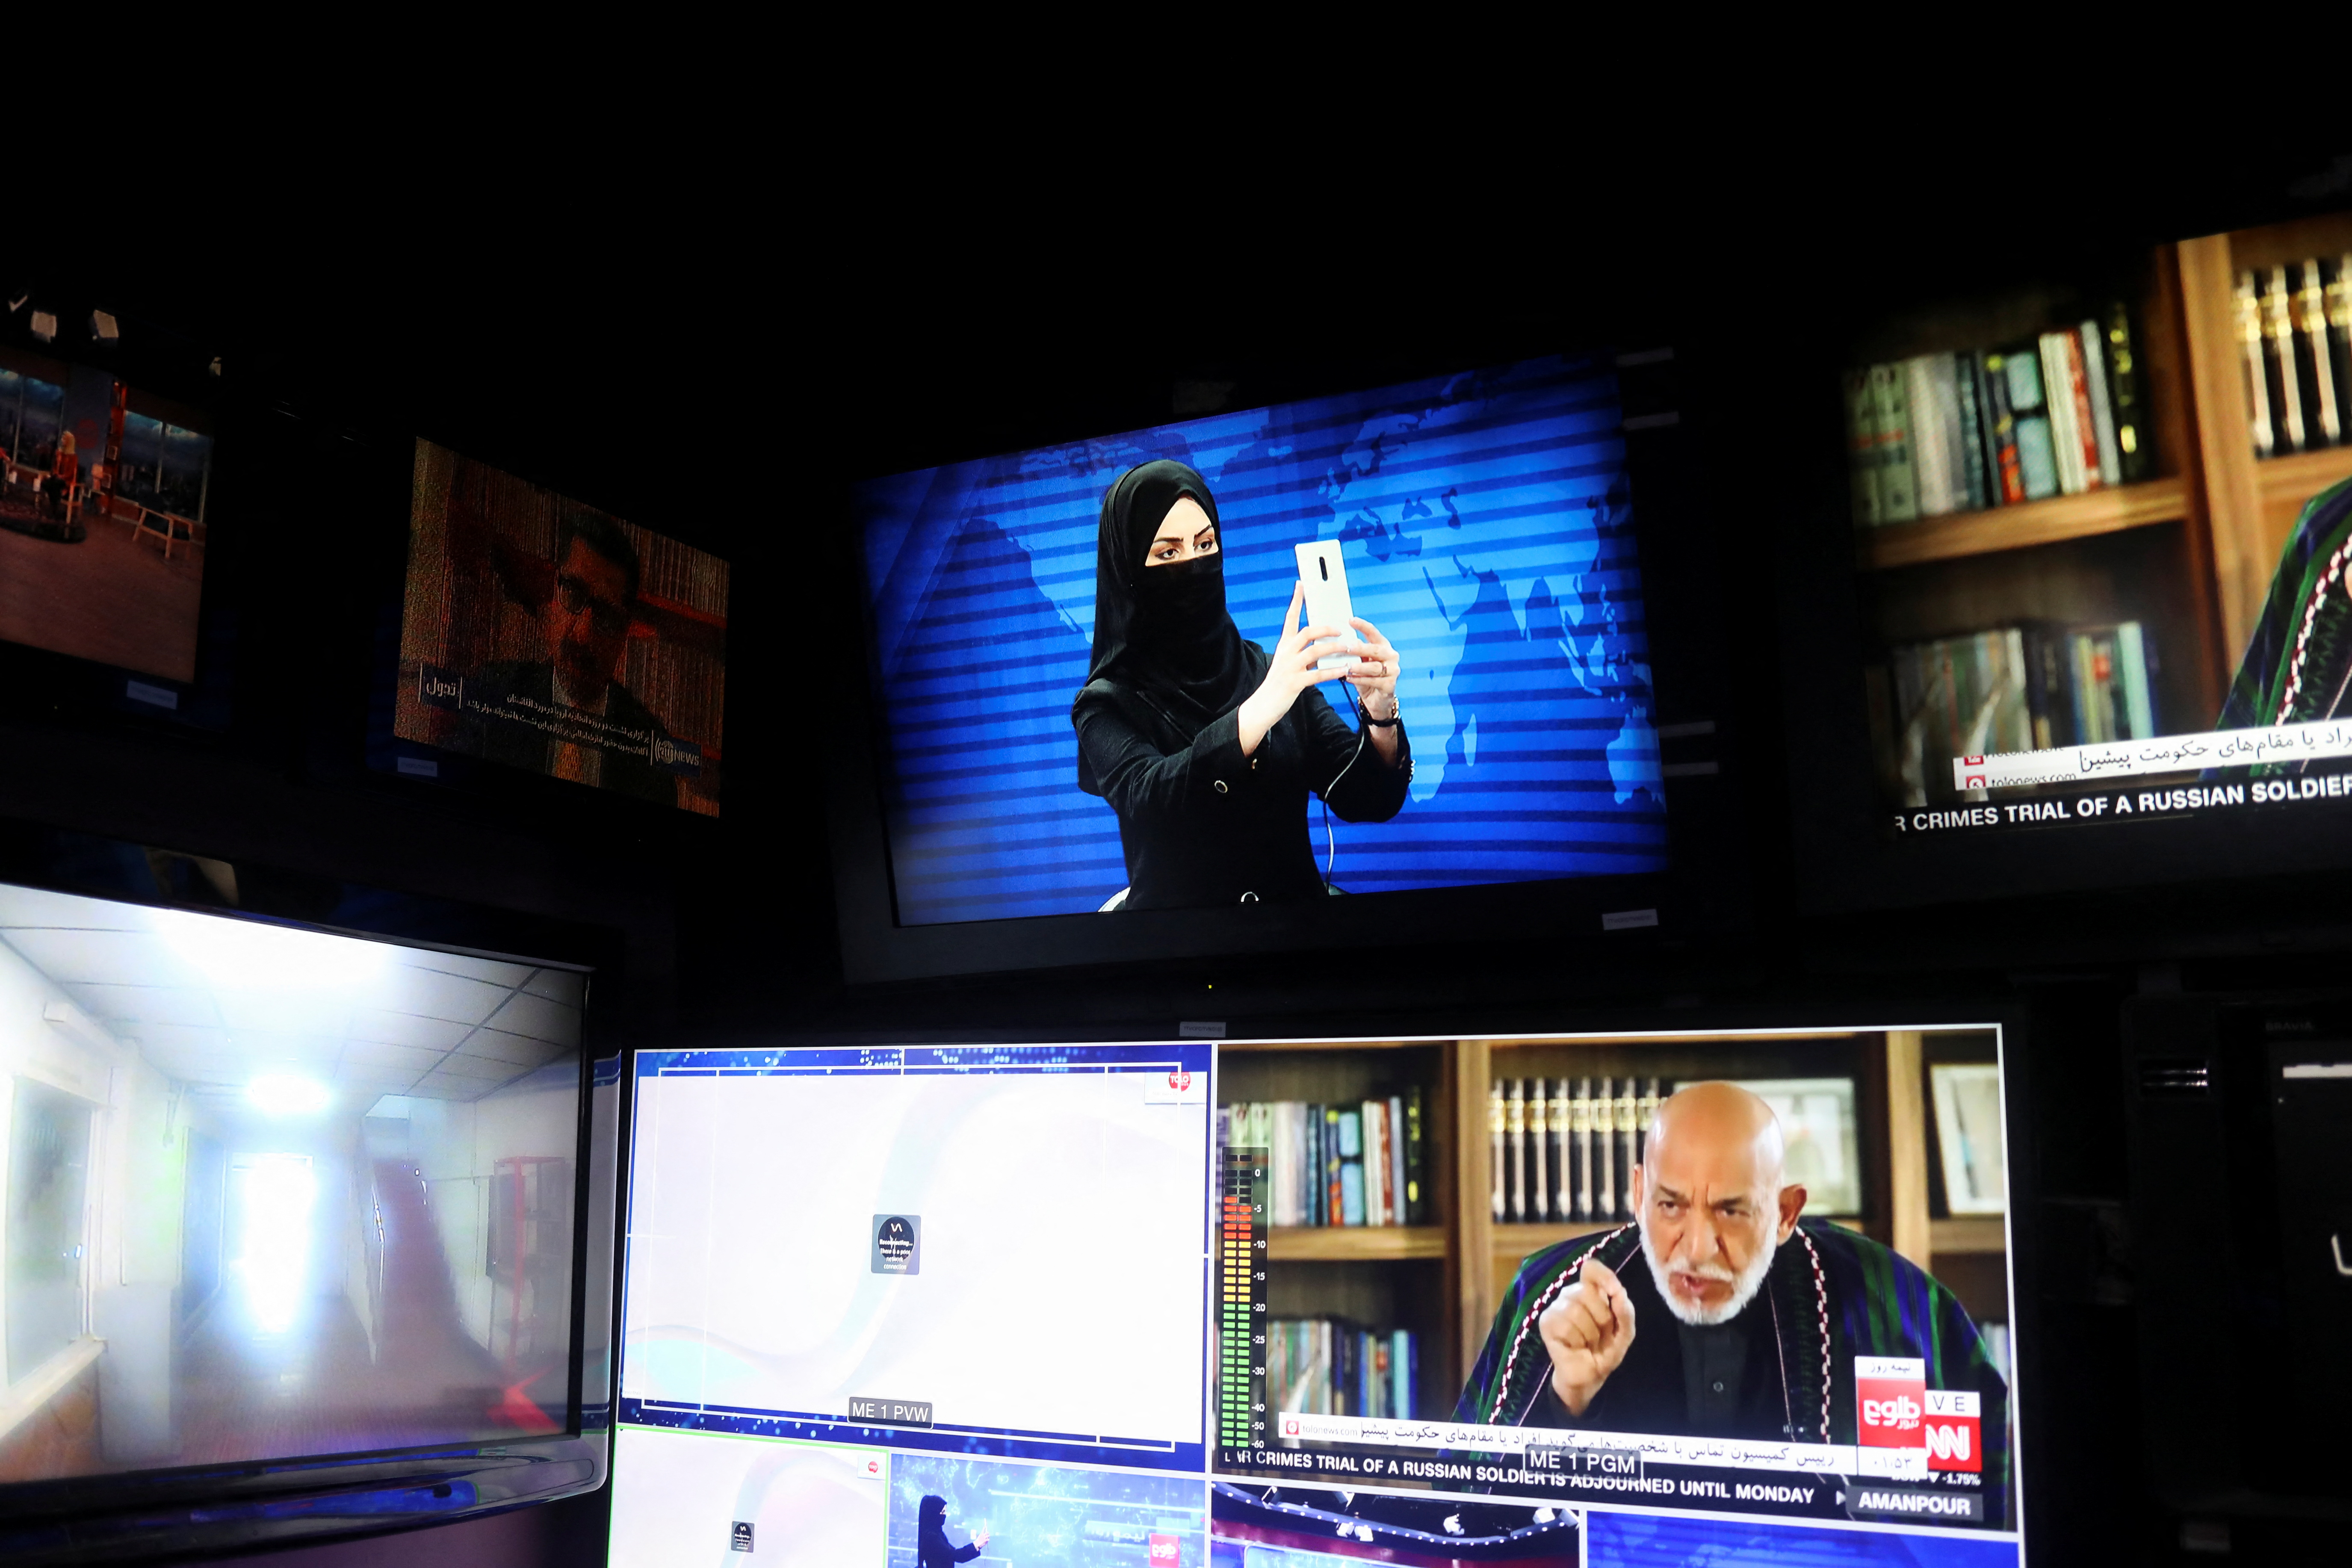 Una presentadora de Tolo News, Khatereh Ahmadi, se toma un selfie en una sala de prensa mientras se cubre la cara en el canal de televisión Tolo en Kabul, Afganistán, el 22 de mayo de 2022 (REUTERS/Ali Khara)